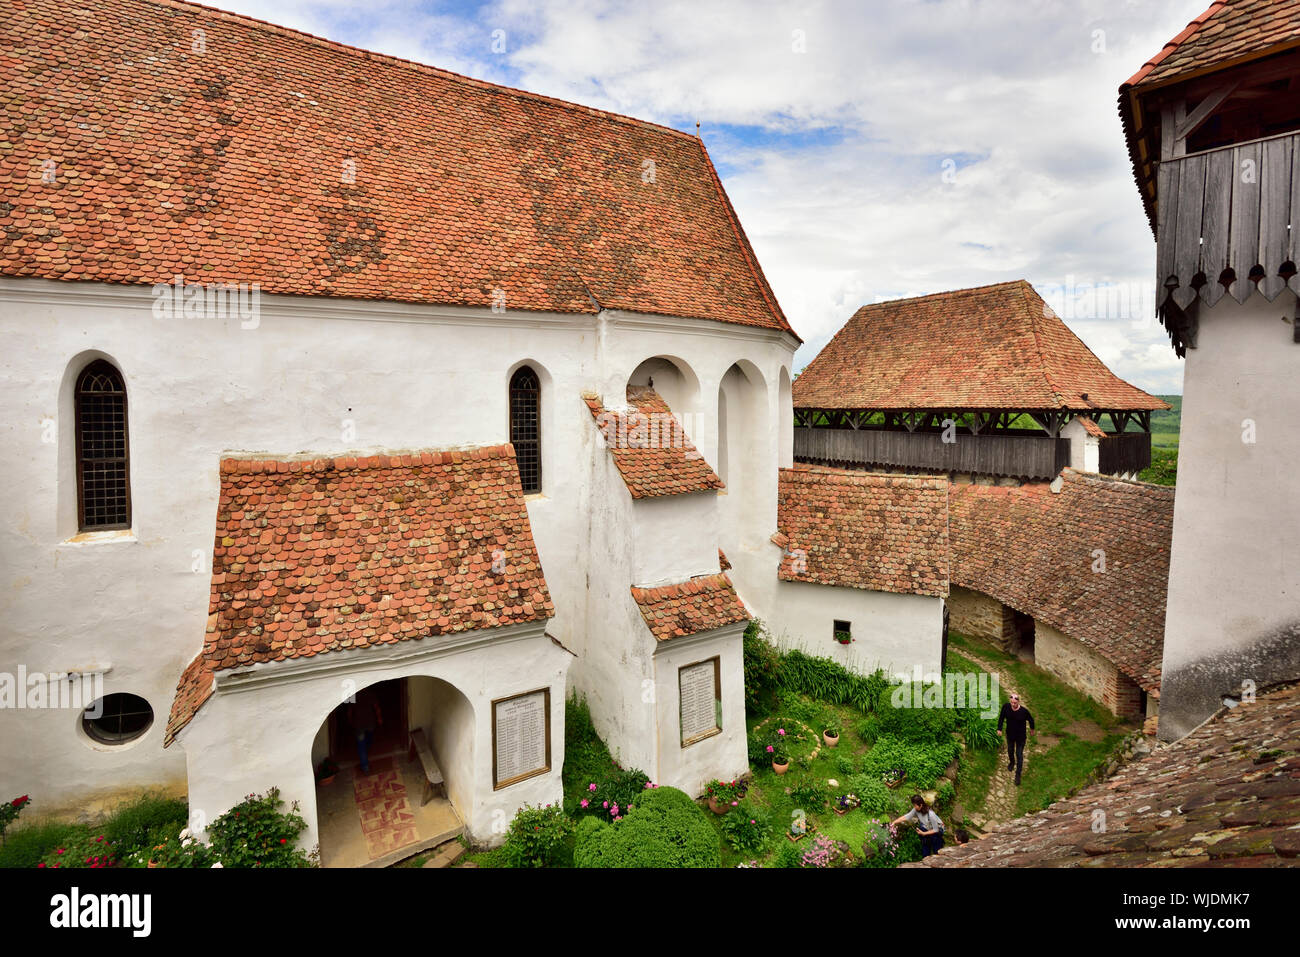 Die viscri befestigte Kirche wurde durch die Siebenbürger sächsischen Gemeinschaft in Viscri im 13. Jahrhundert erbaut. Es ist ein UNESCO Weltkulturerbe. Rumänien Stockfoto